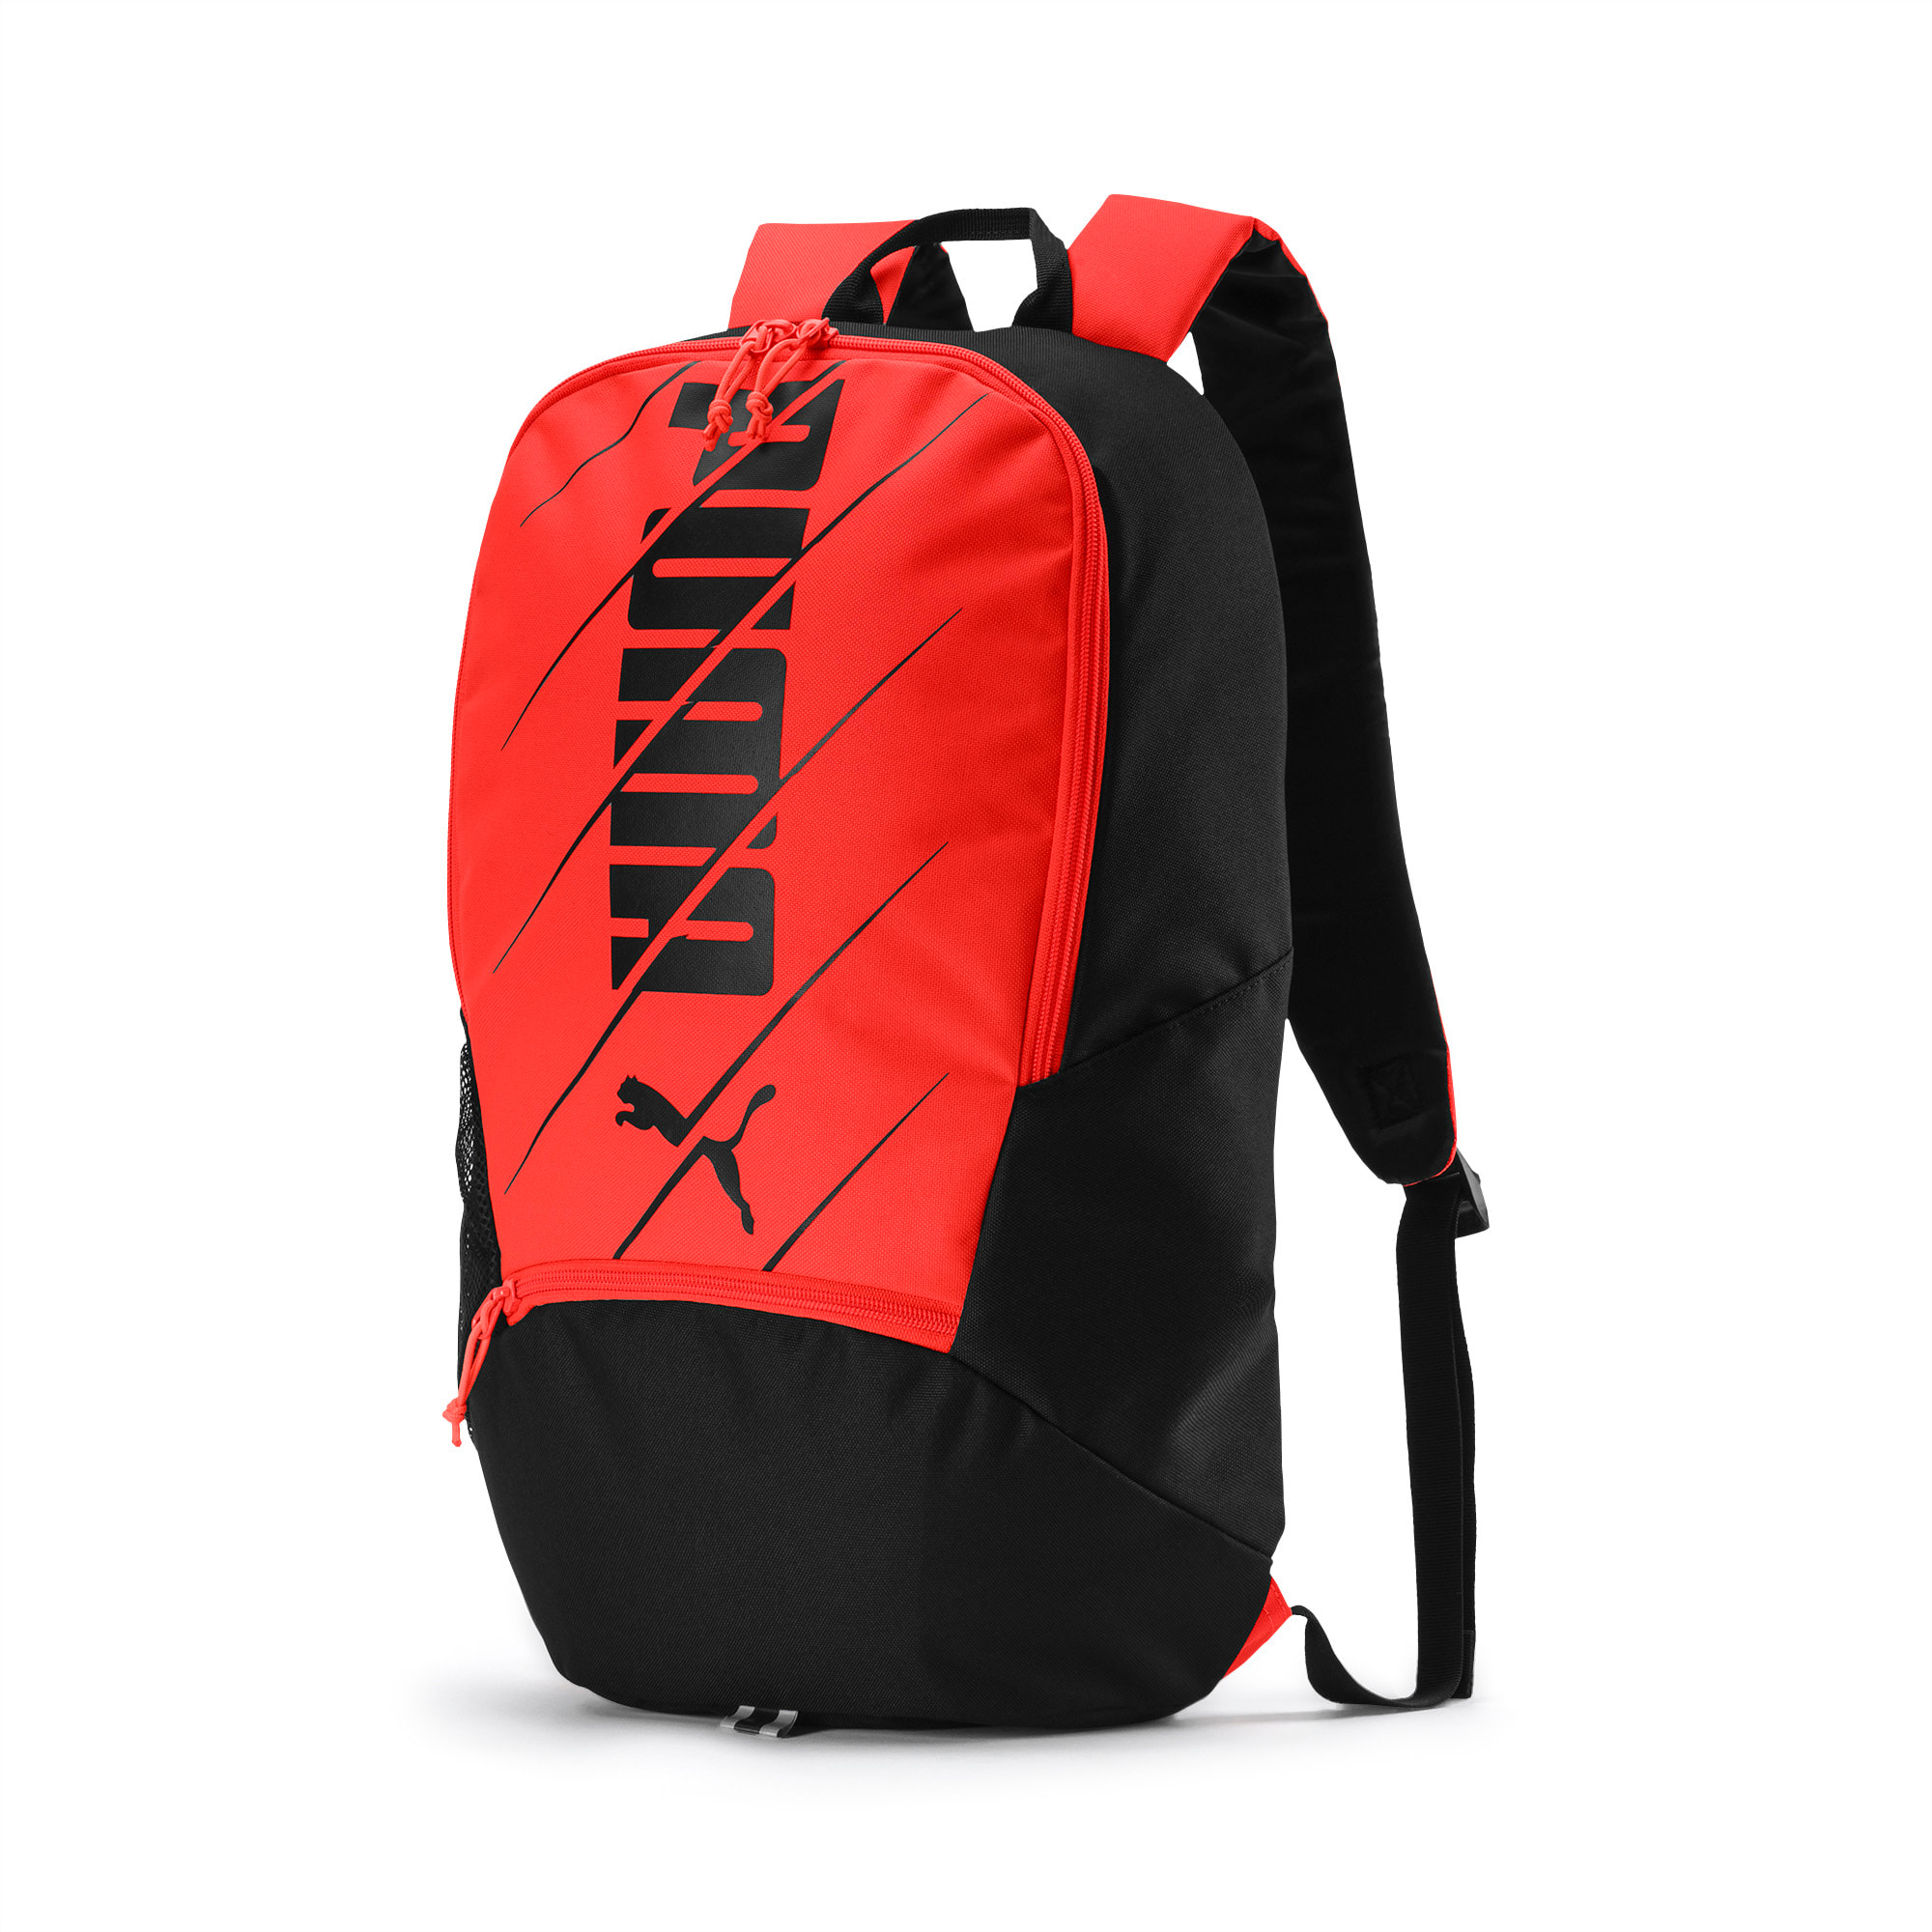 red puma backpack